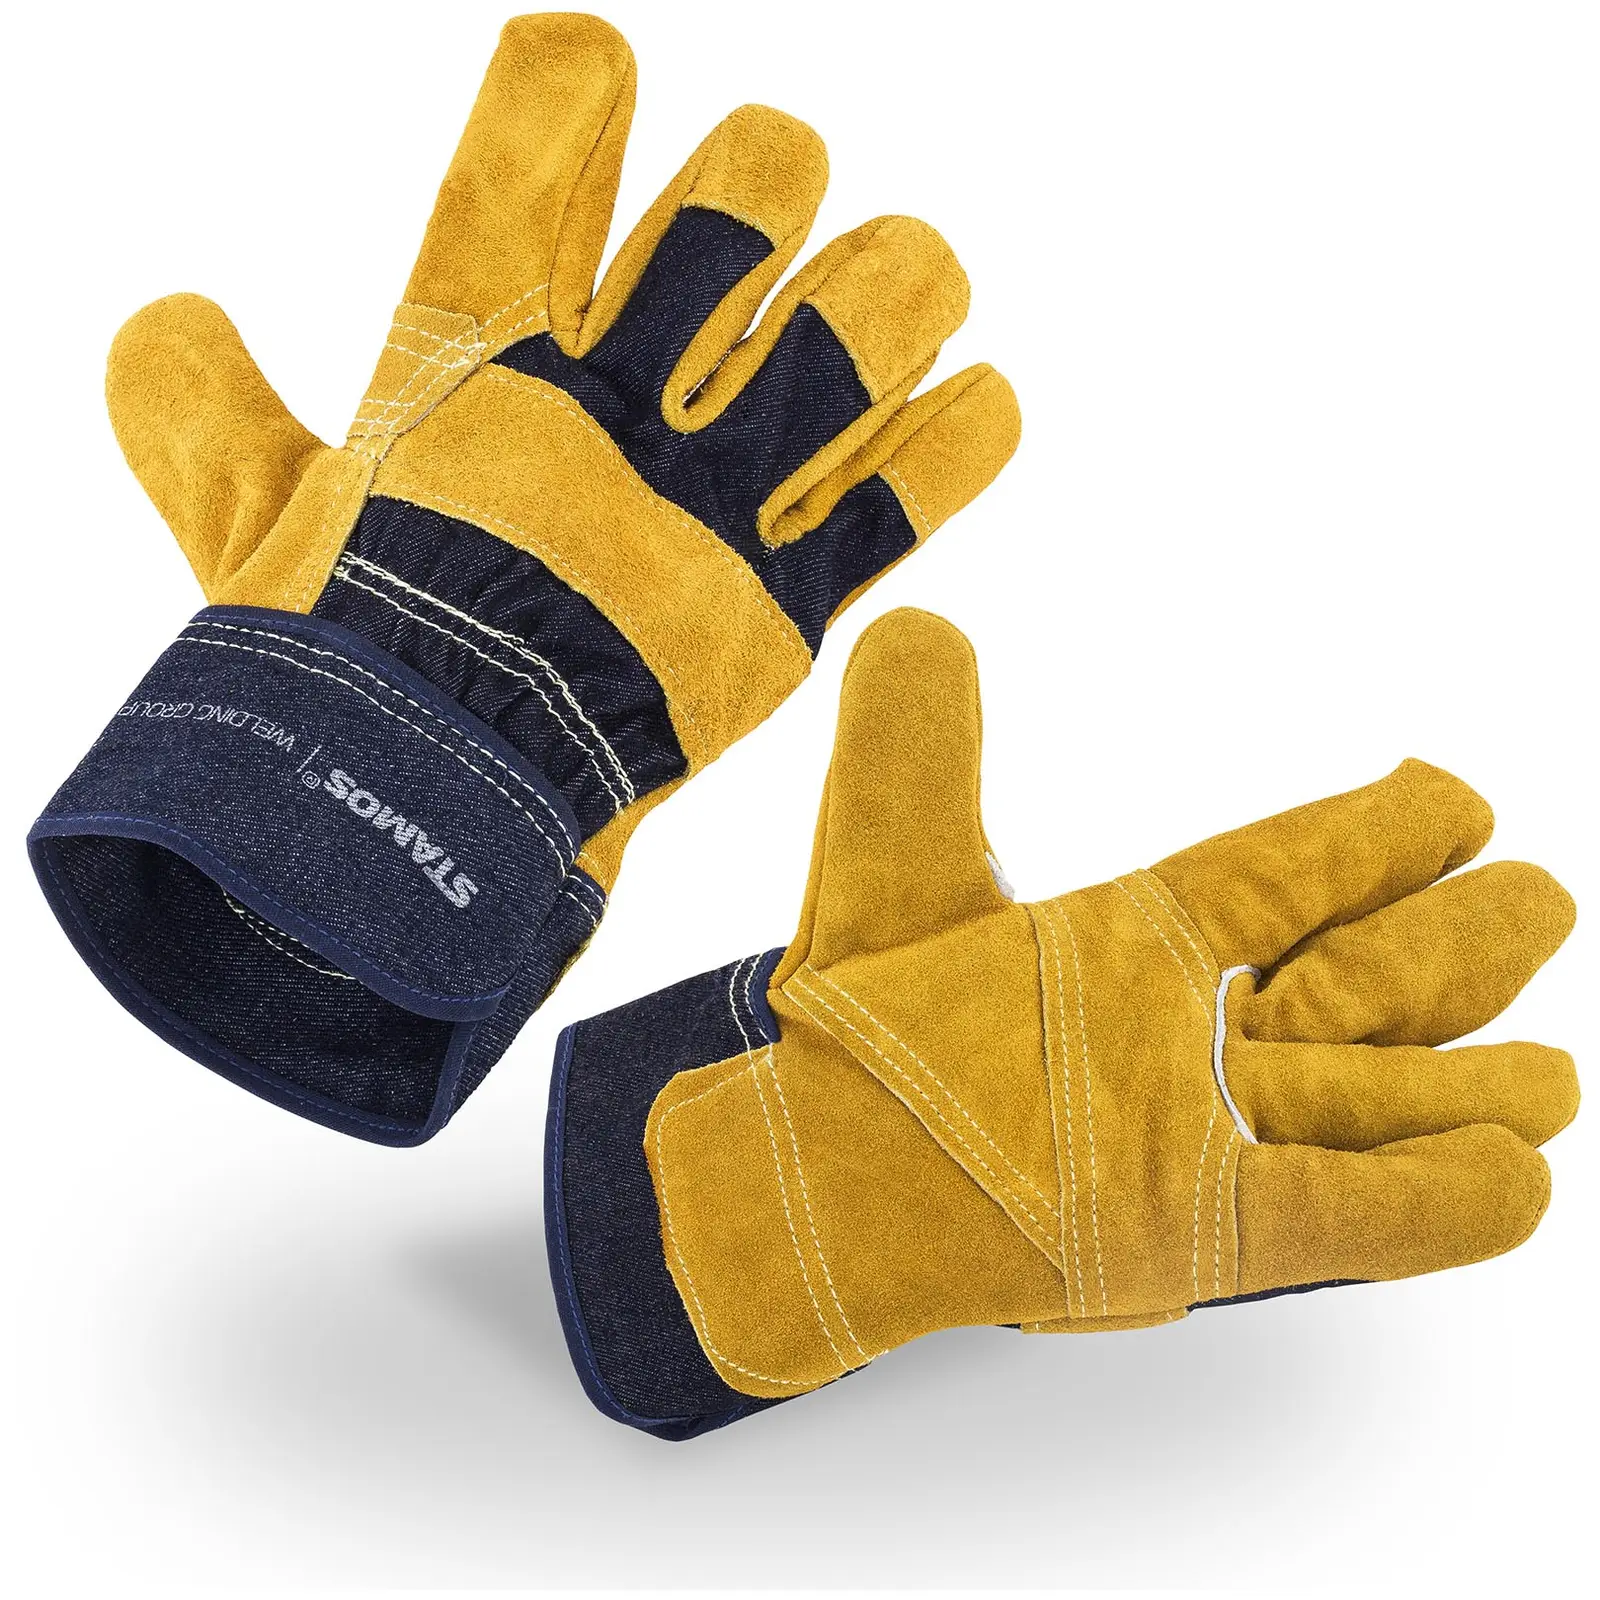 Work Gloves - Size 10 / XL